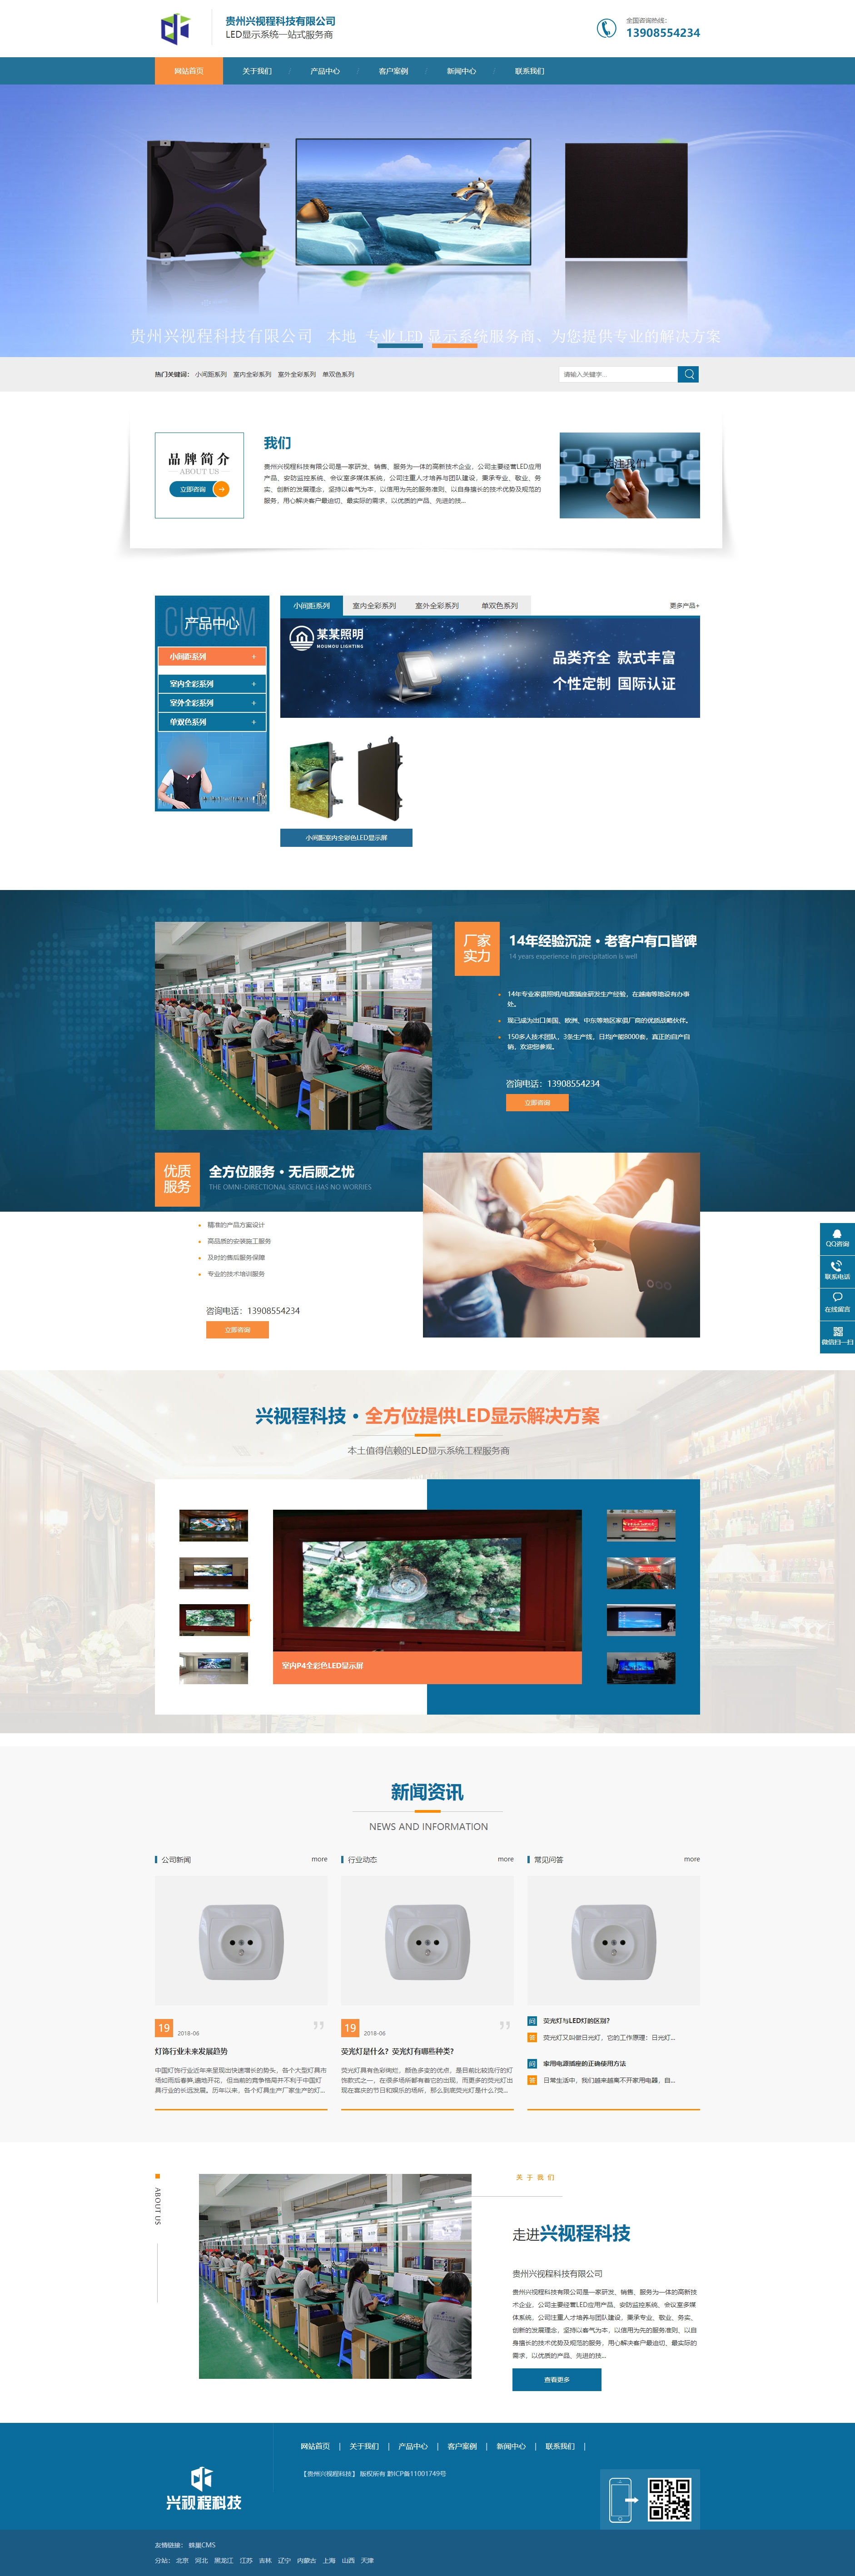 都匀贵州兴视程科技有限公司 网站正式上线